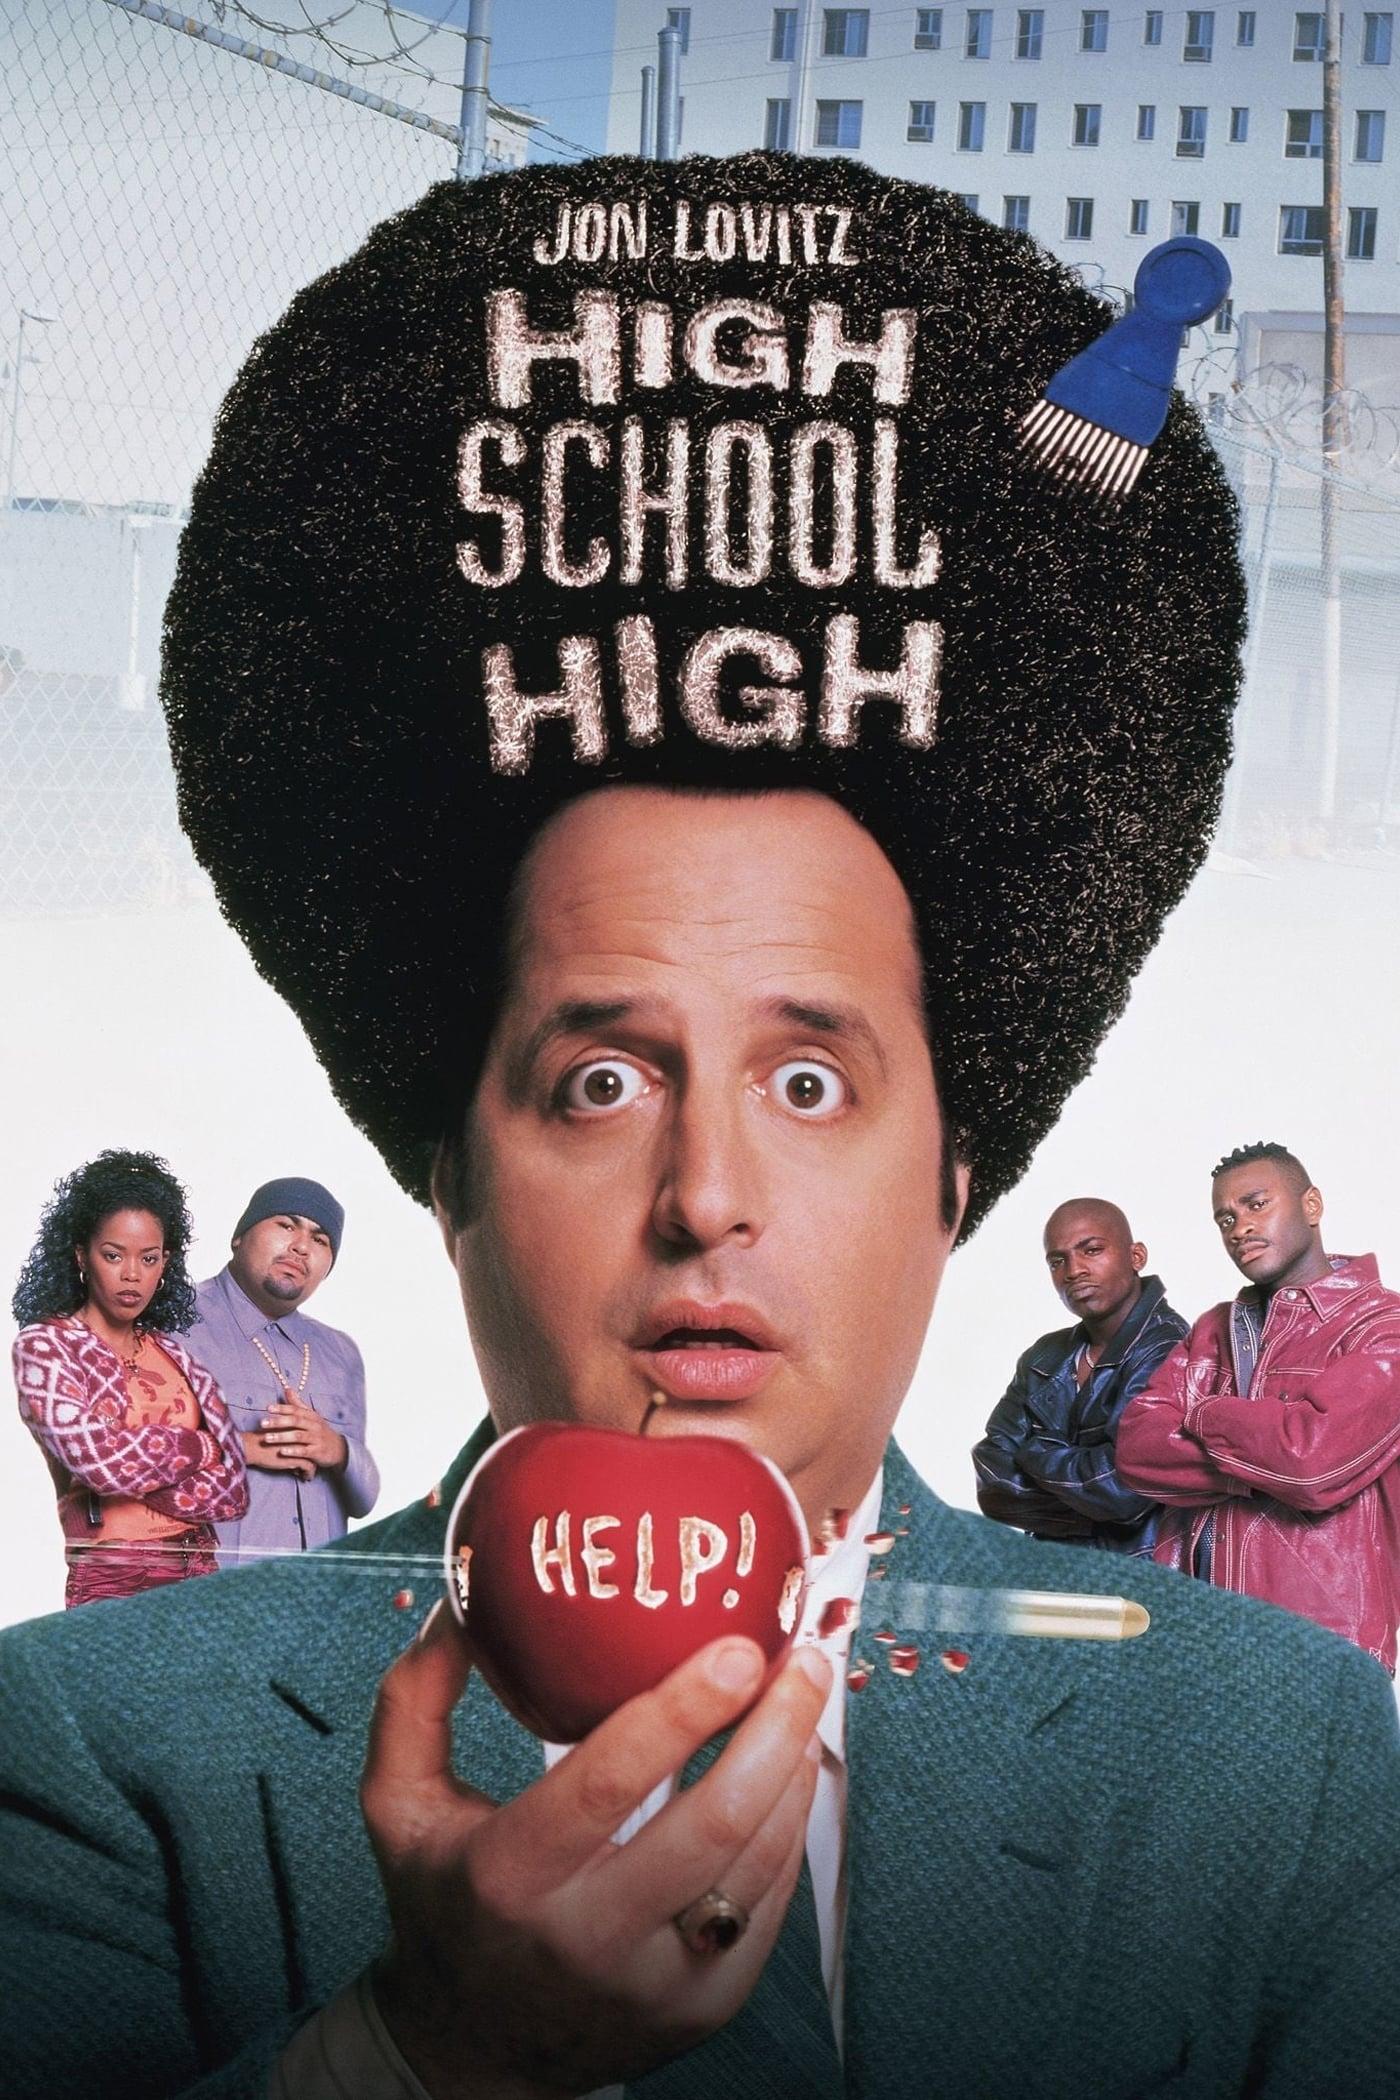 High School High poster